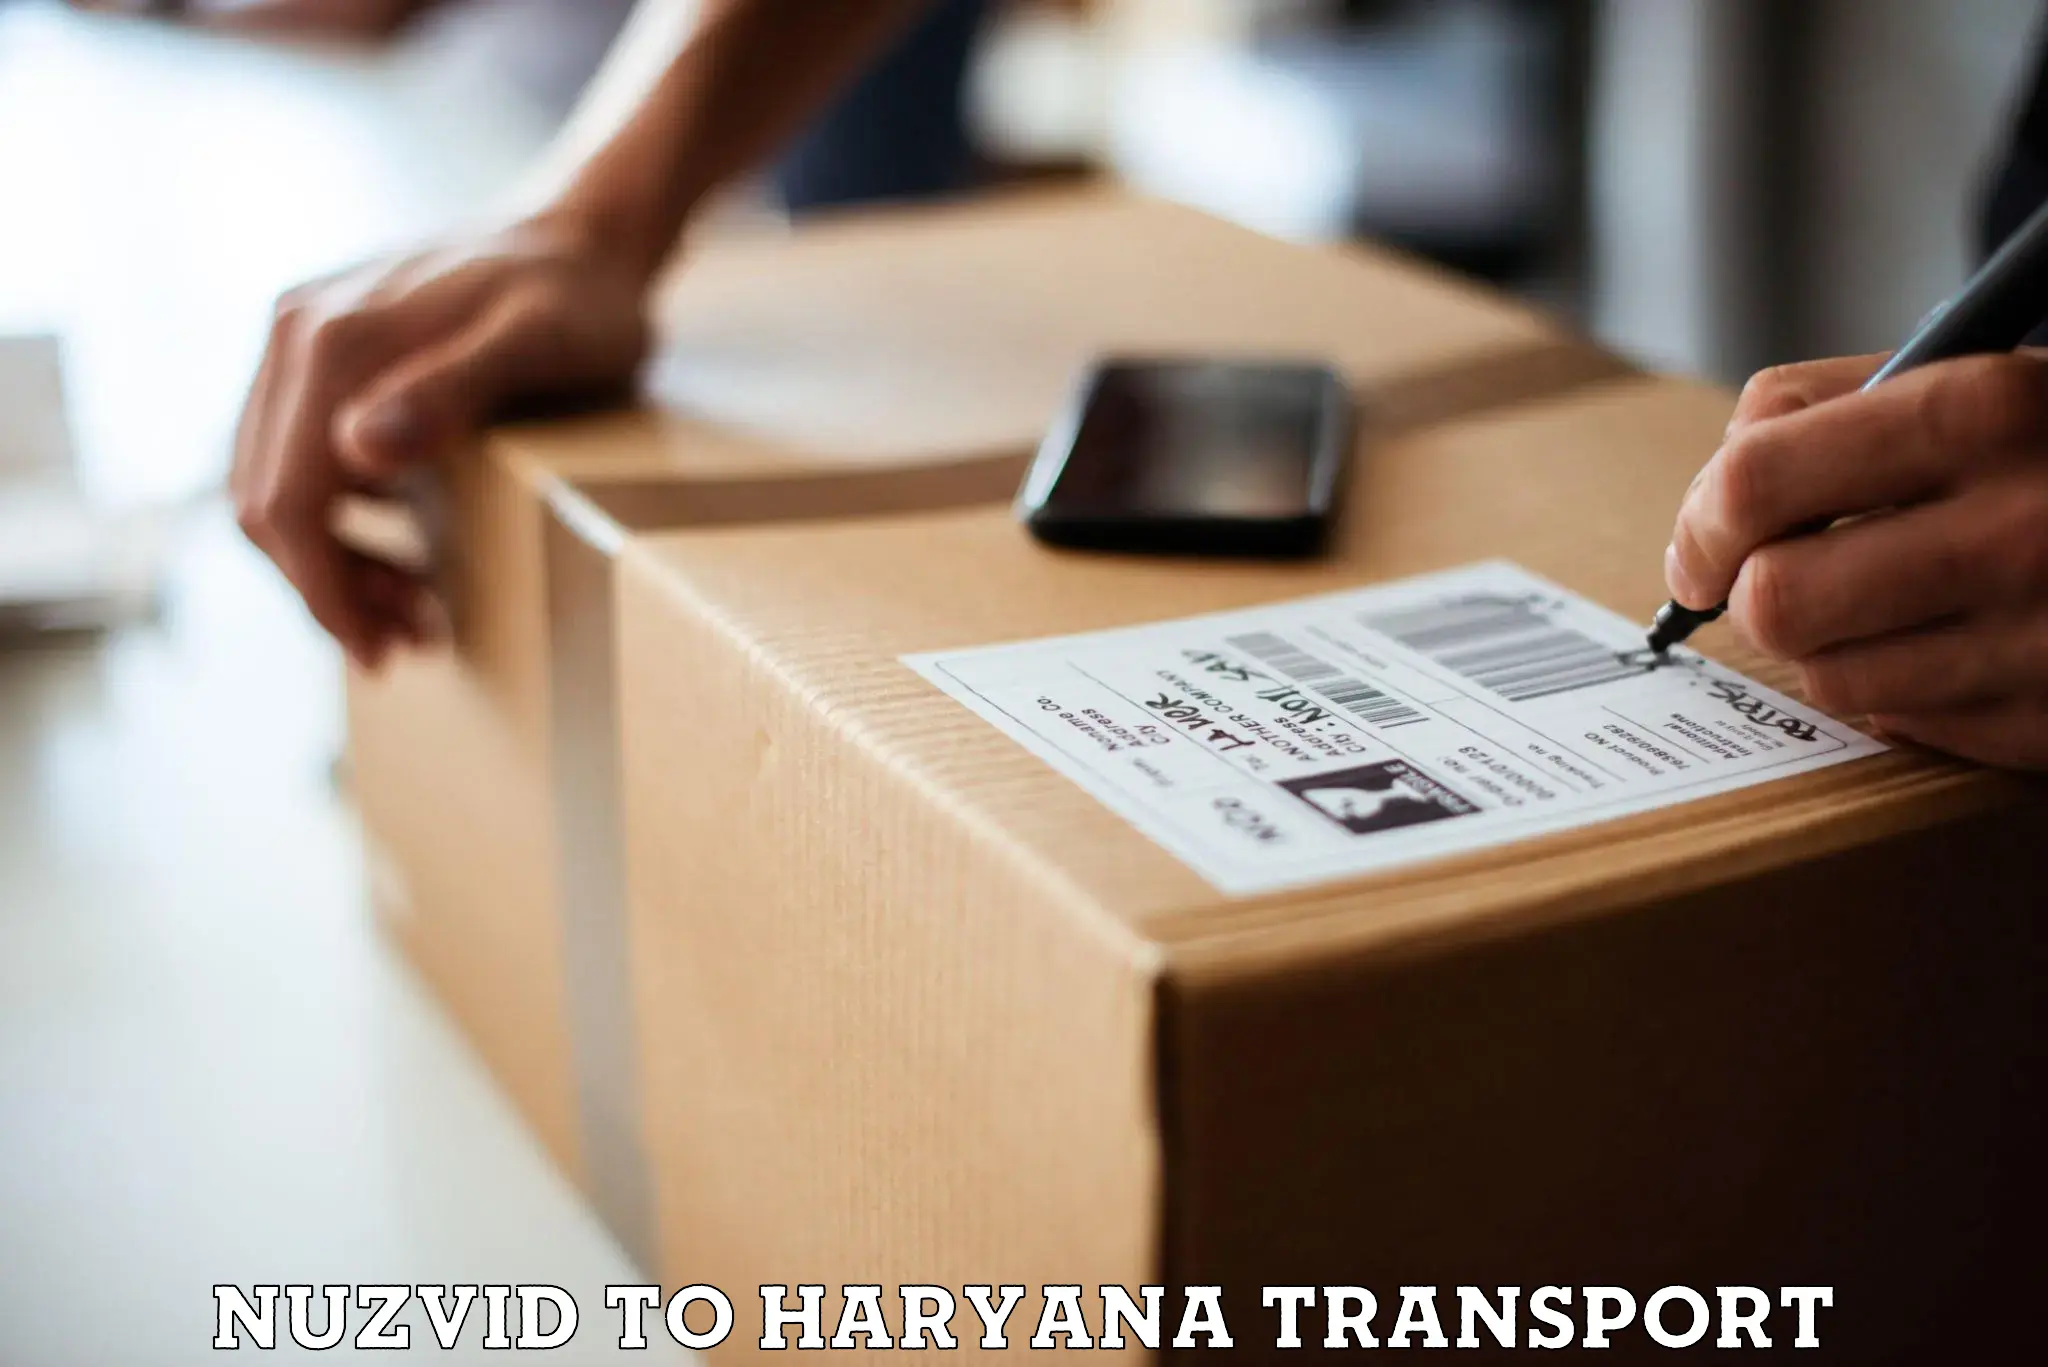 Furniture transport service Nuzvid to Ratia